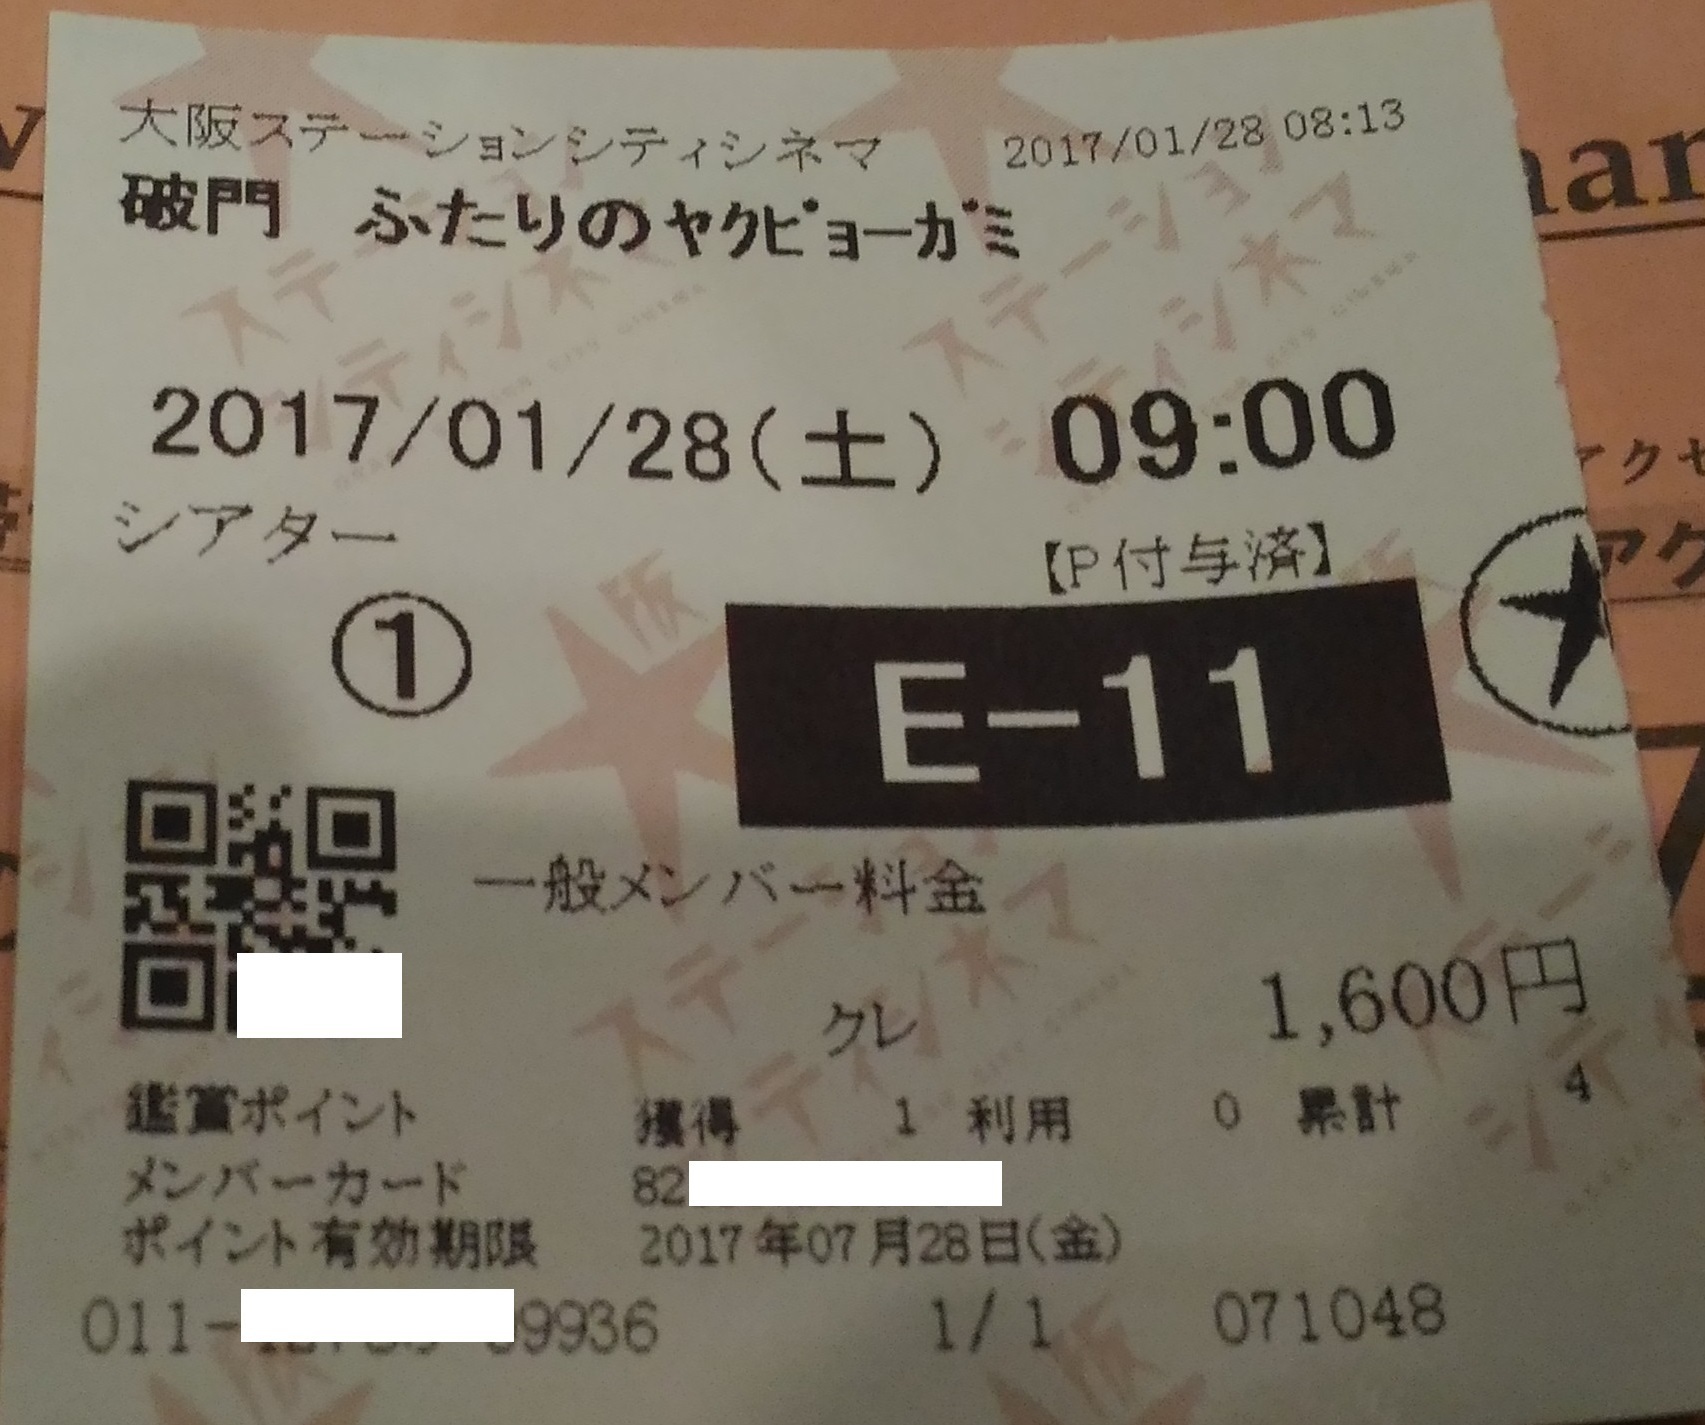 大阪ステーションシティシネマ メンバーカードをクレジット払い Zenfone 2 Laserカメラ スマホで写真 スクリーンショットブログ